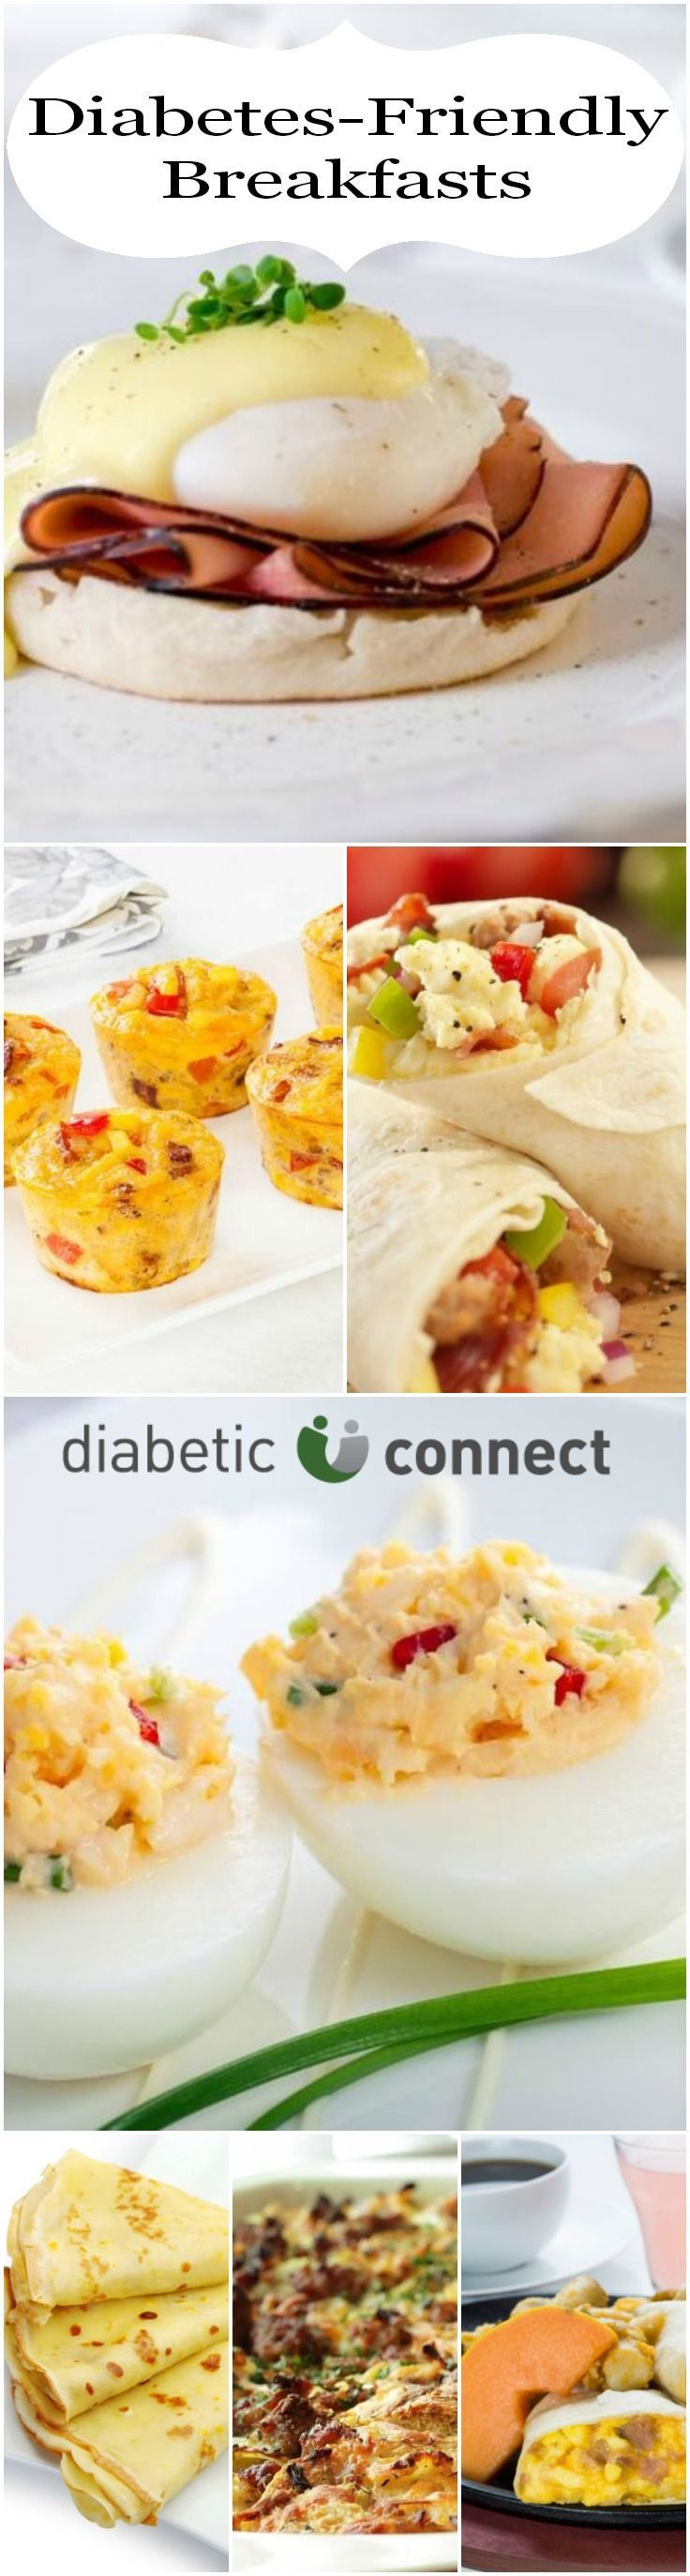 Diabetic Recipes For Breakfast
 Diabetic breakfast ideas